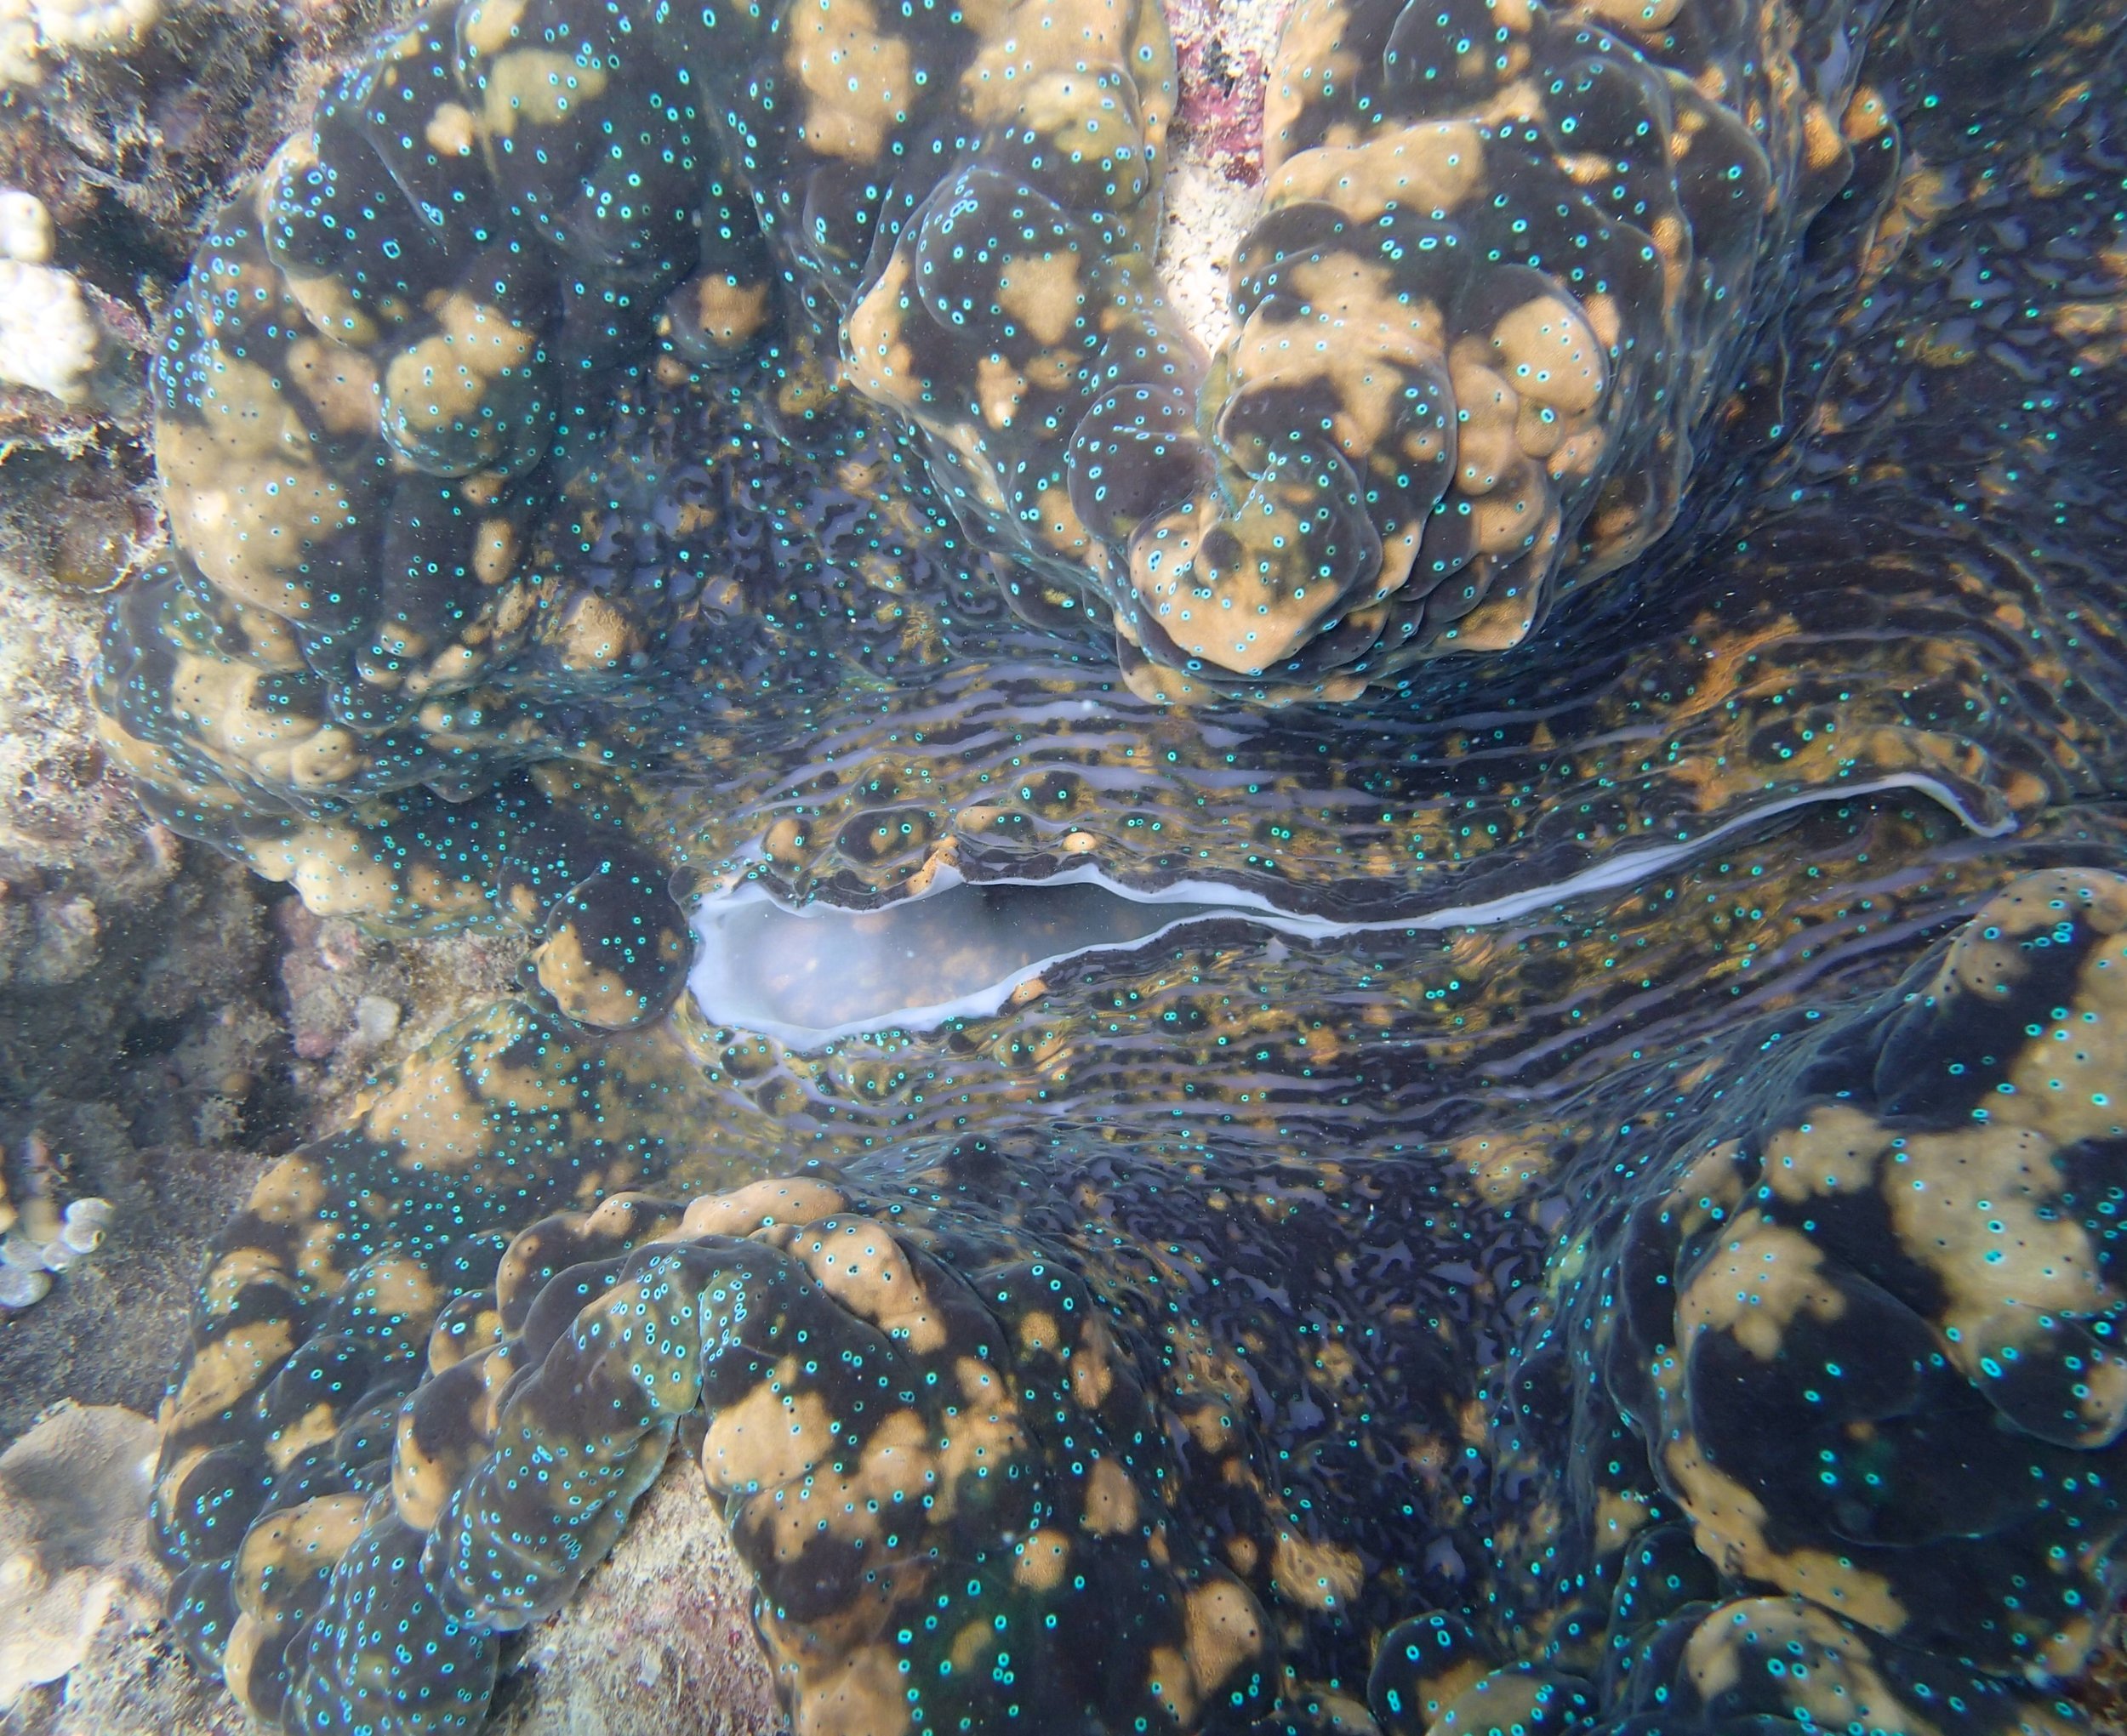 monster giant clam.jpg